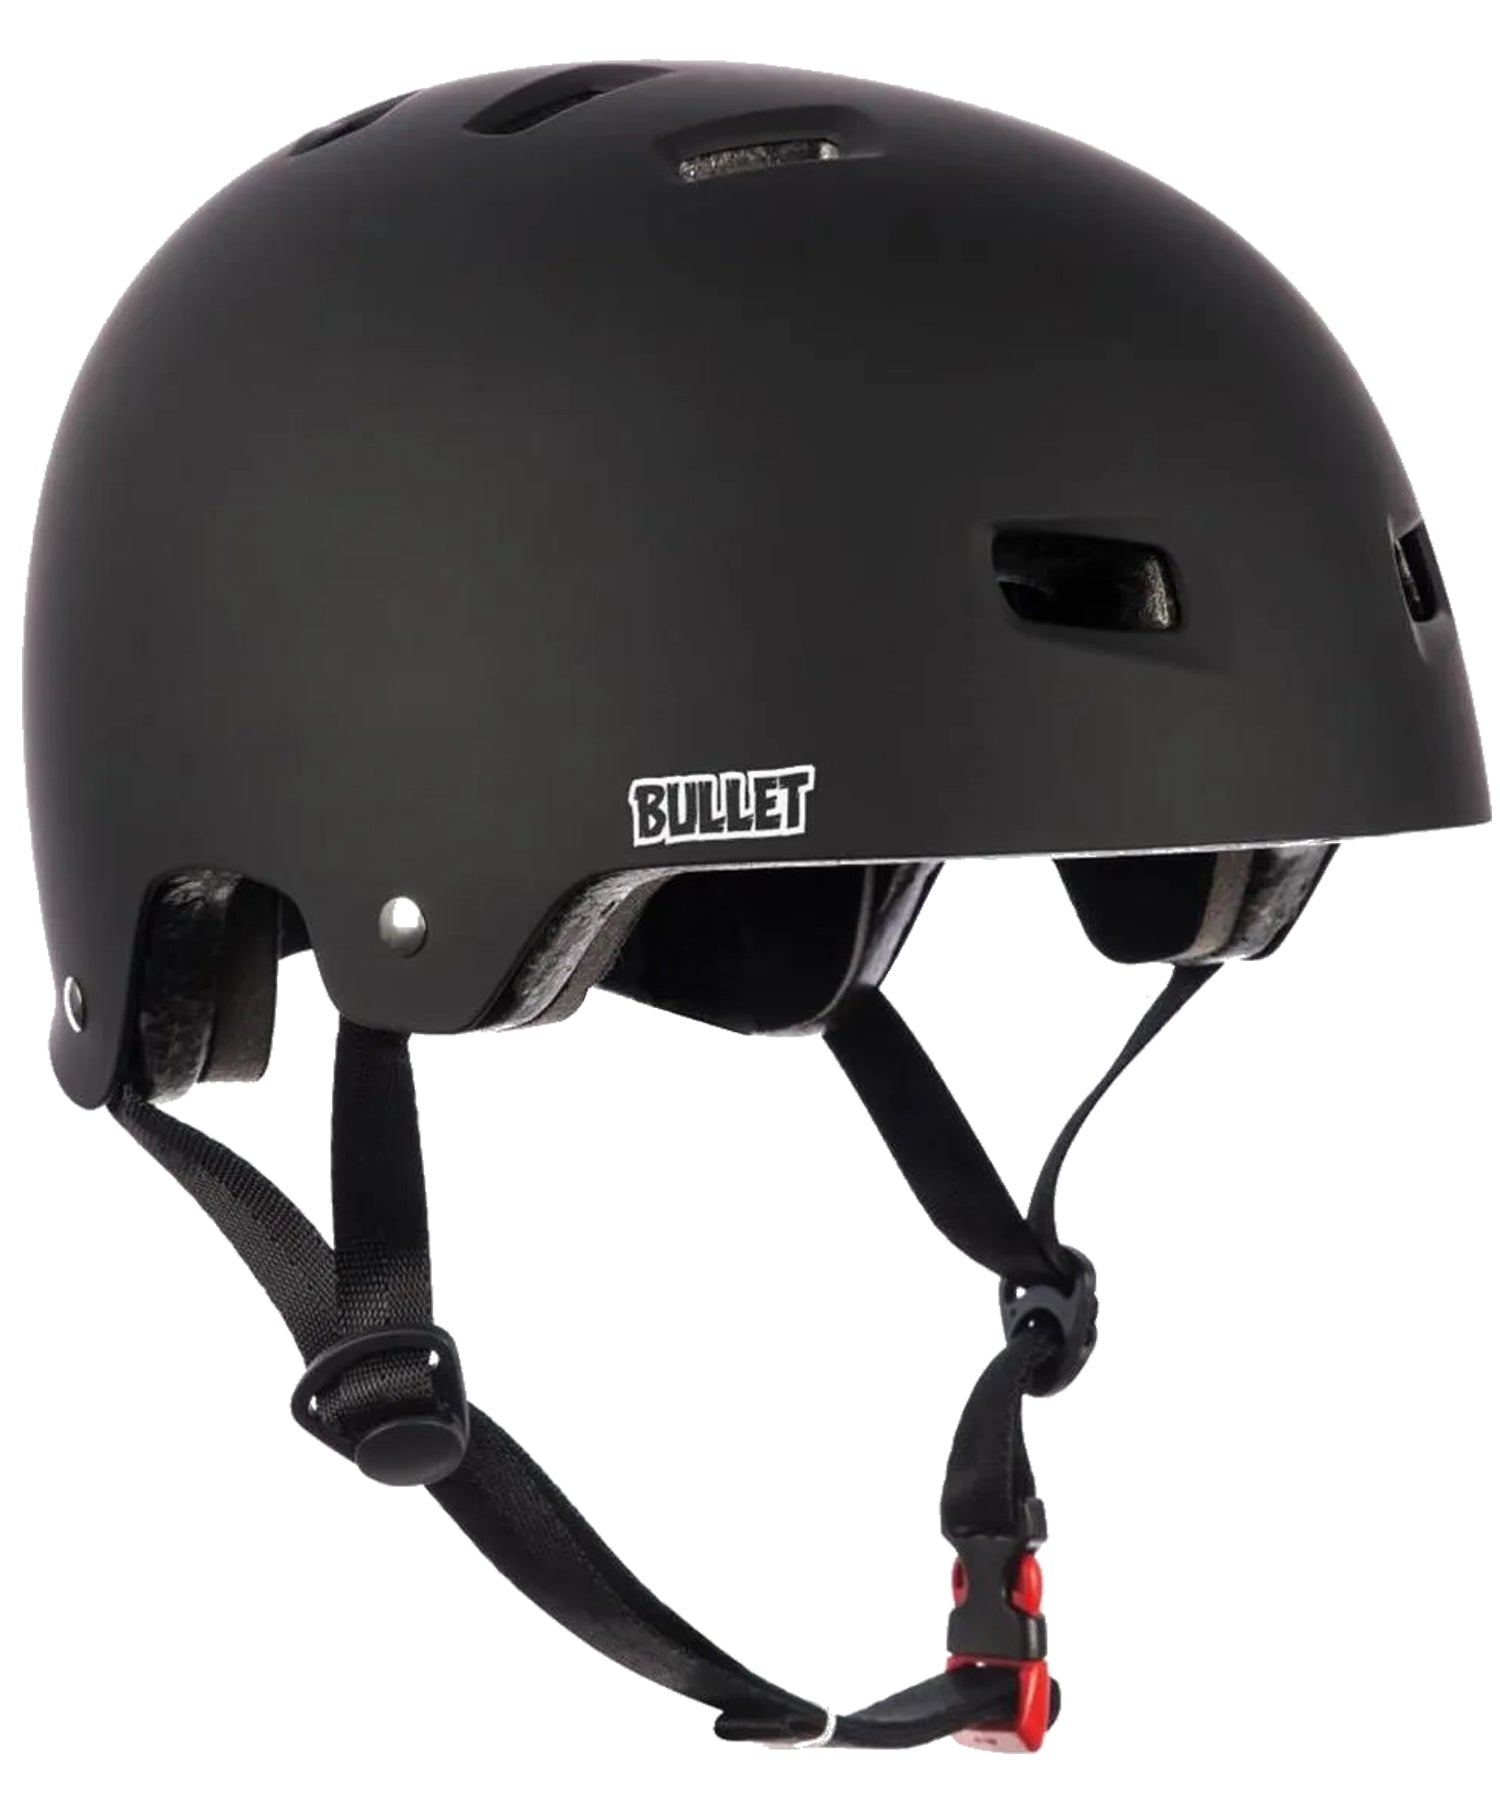 bullet-casco-skate-de-luxe-color-negro-mate-carcasa dura abs-12-orificios de ventilación-acolchado-interior